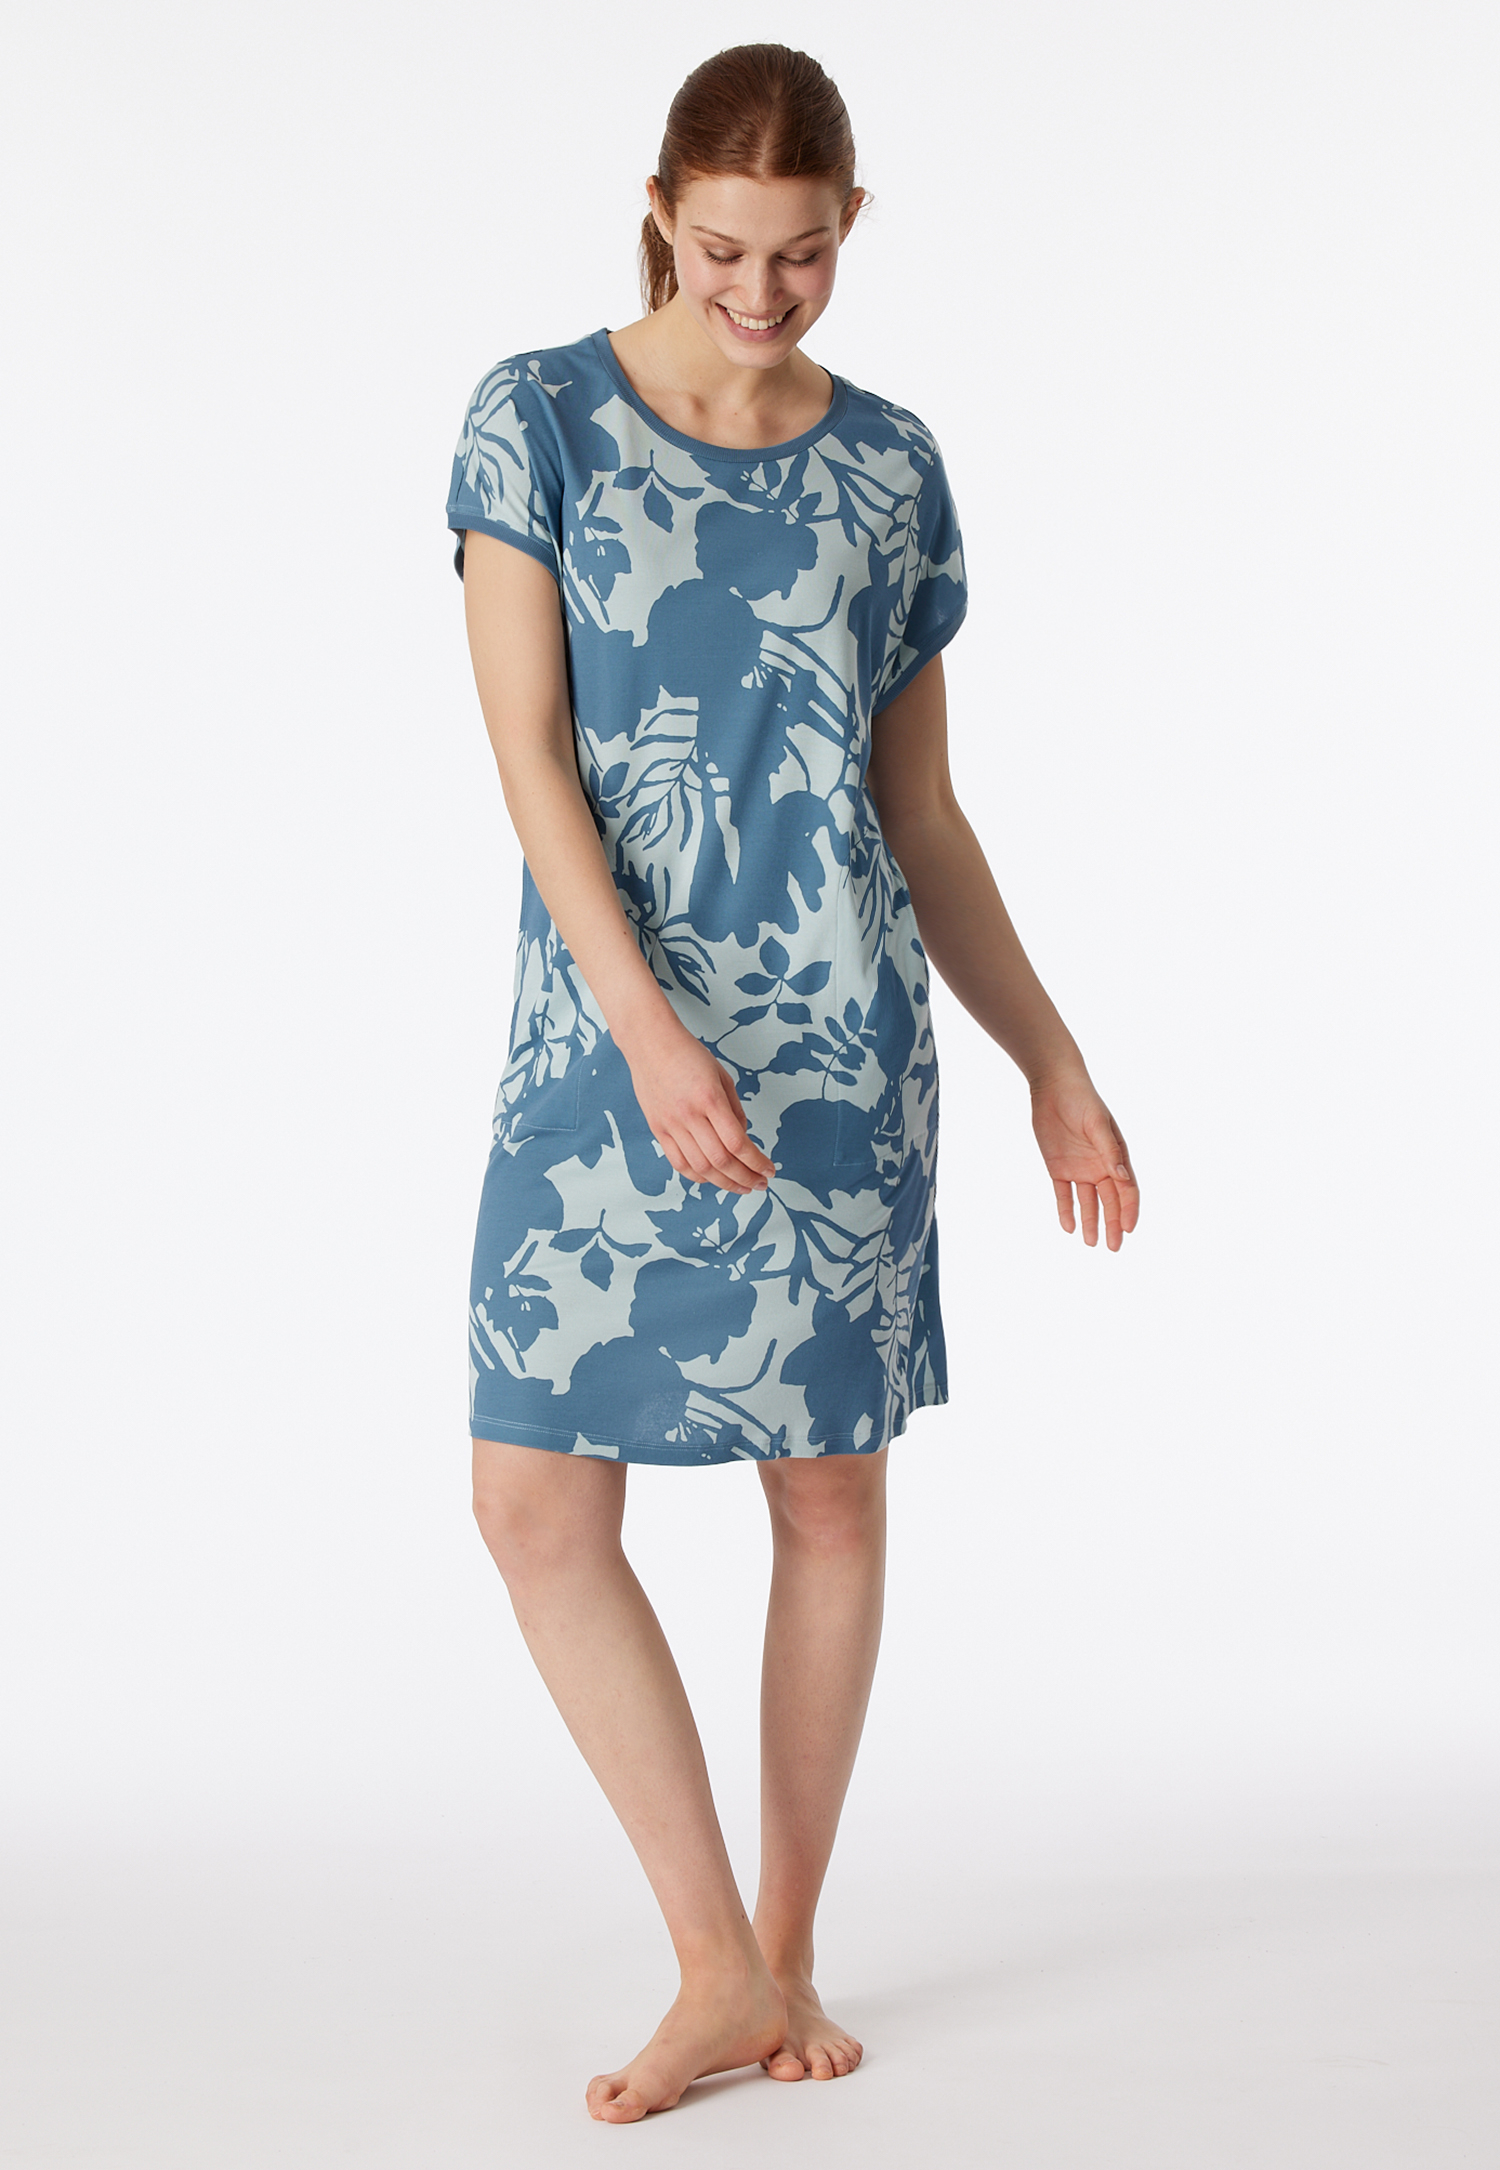 Sleepshirt kurzarm Blumenprint bluebird - Modern Nightwear 46 von Schiesser